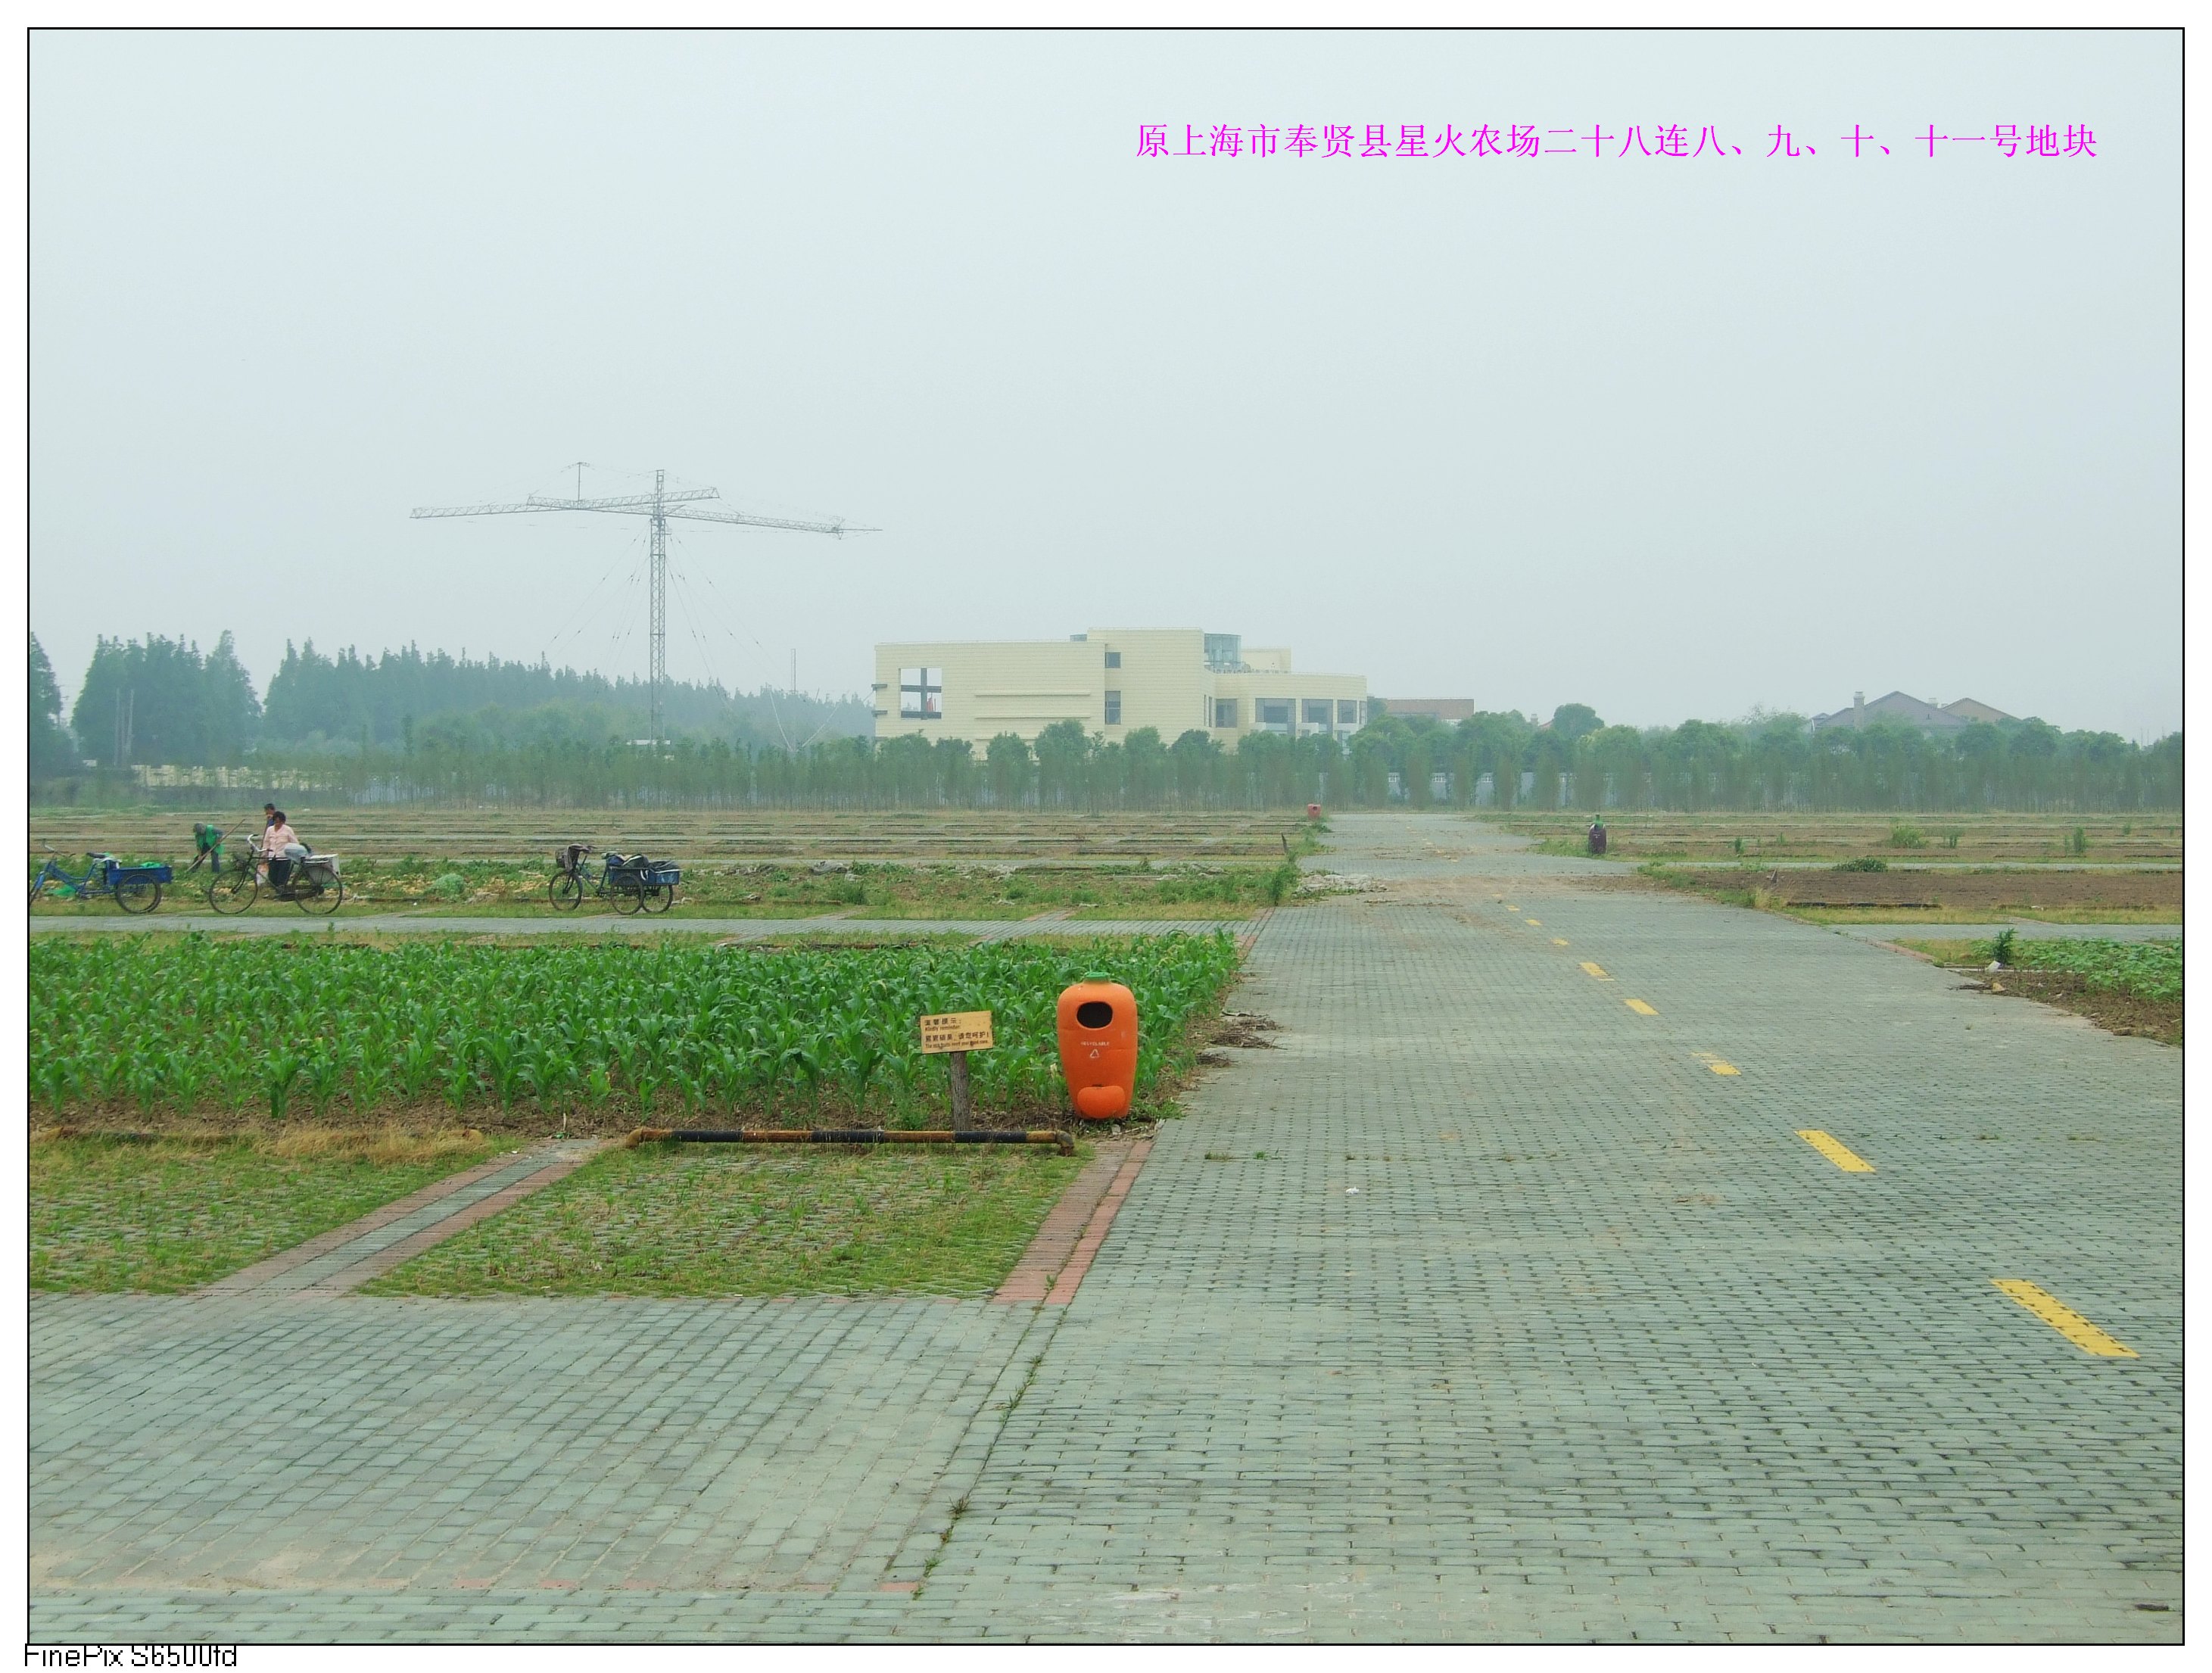 上海自贸区星火片区简介-上海杭州湾经济技术开发有限公司